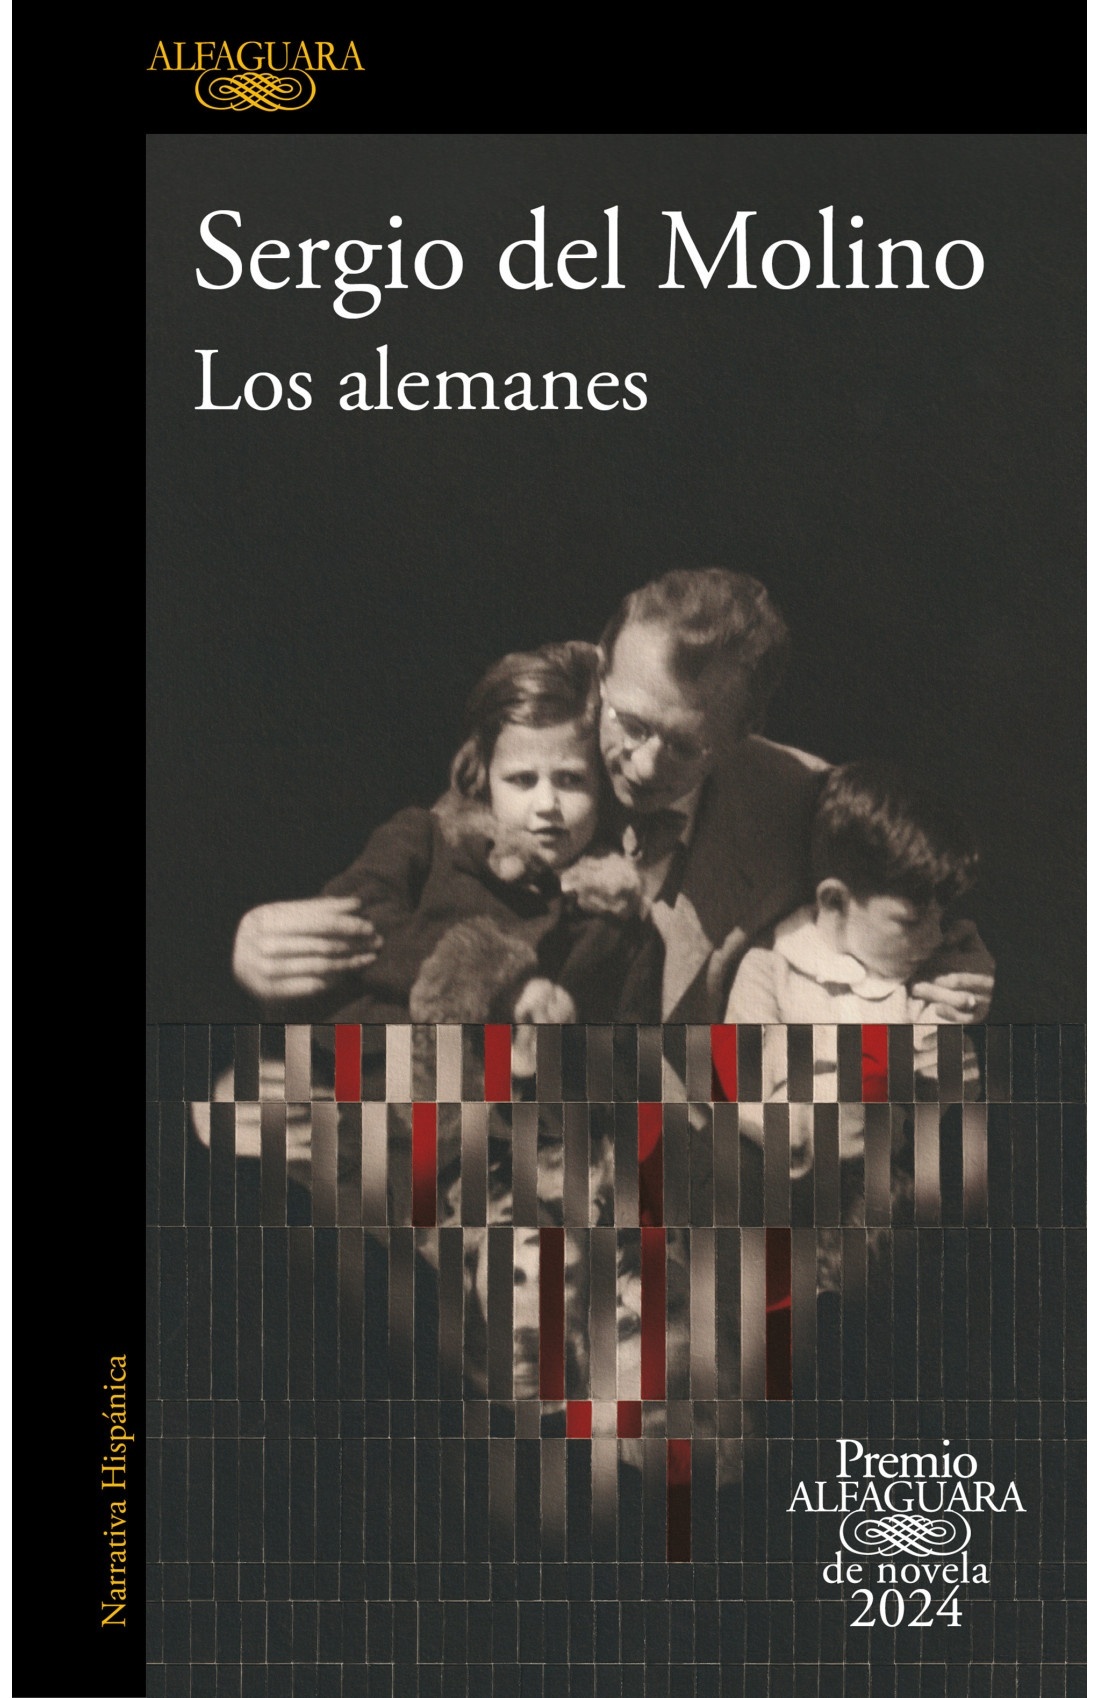 Alemanes, Los "Premio Alfaguara de novela 2024". 